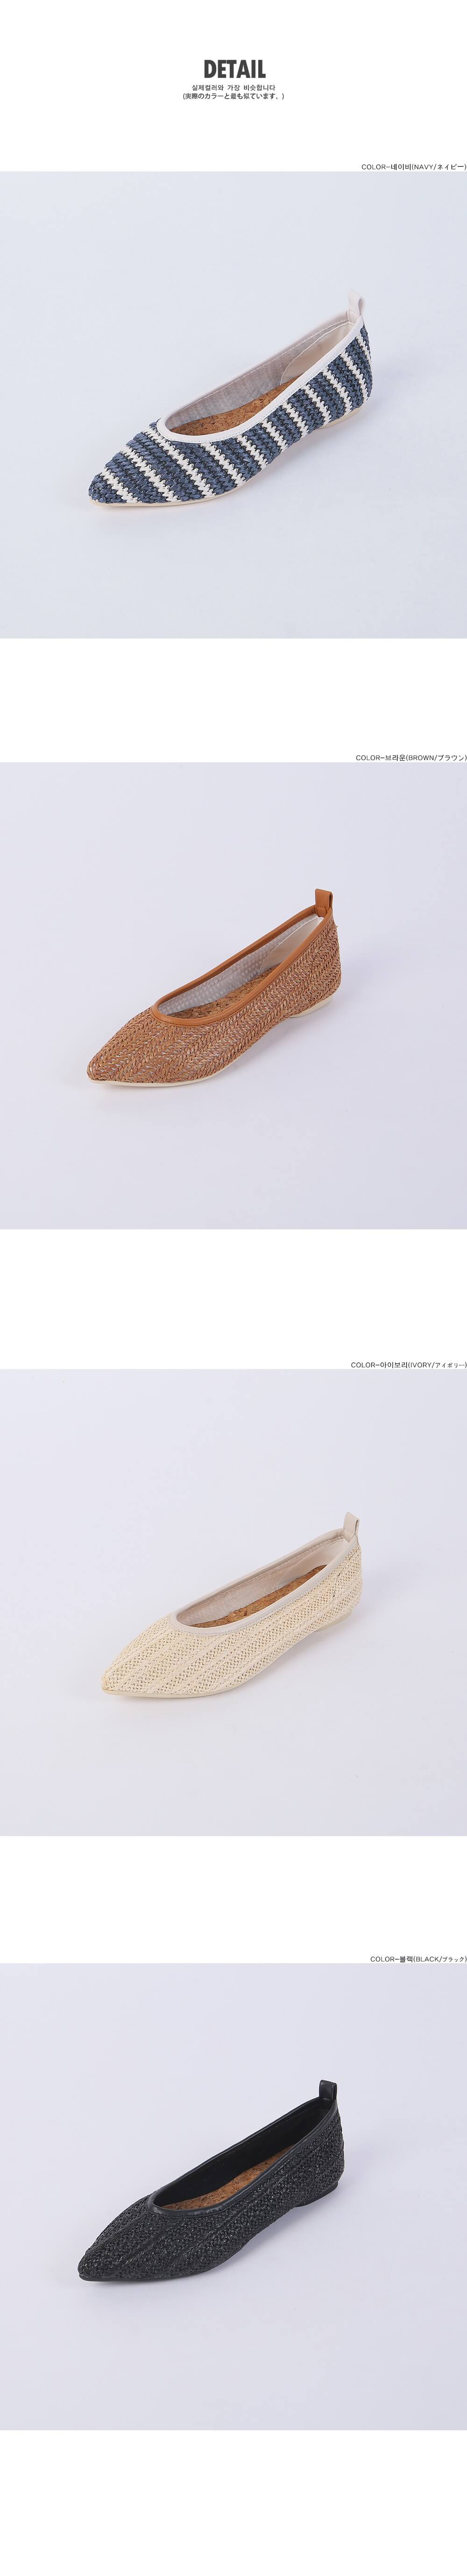 韓國平價服飾 透氣藤編尖頭平底鞋